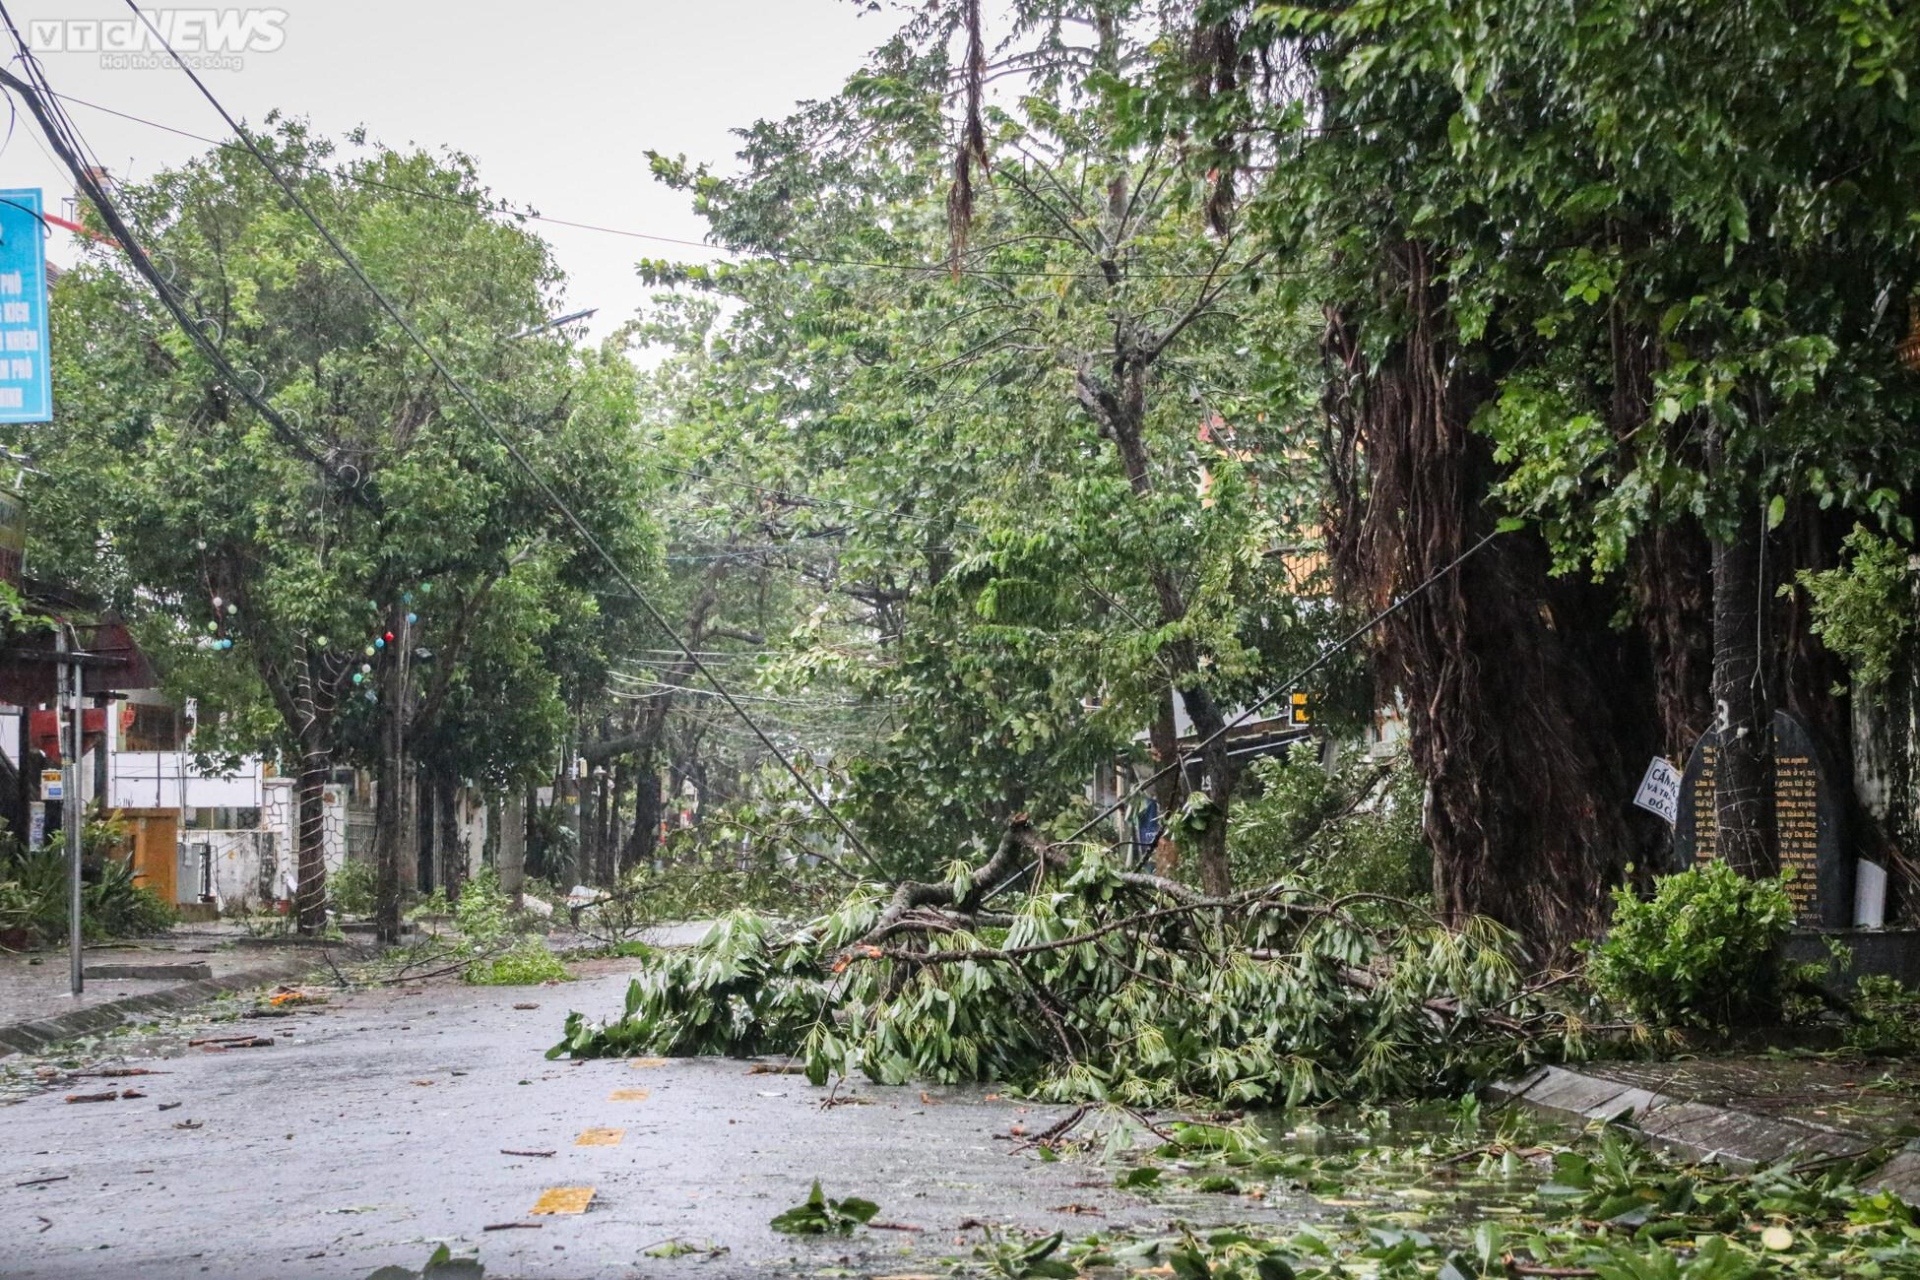 Khung cảnh tang thương, nước sông dâng ngập chợ và nhà dân, cây cối đổ sập, bật gốc tại Quảng Nam sau bão - Ảnh 3